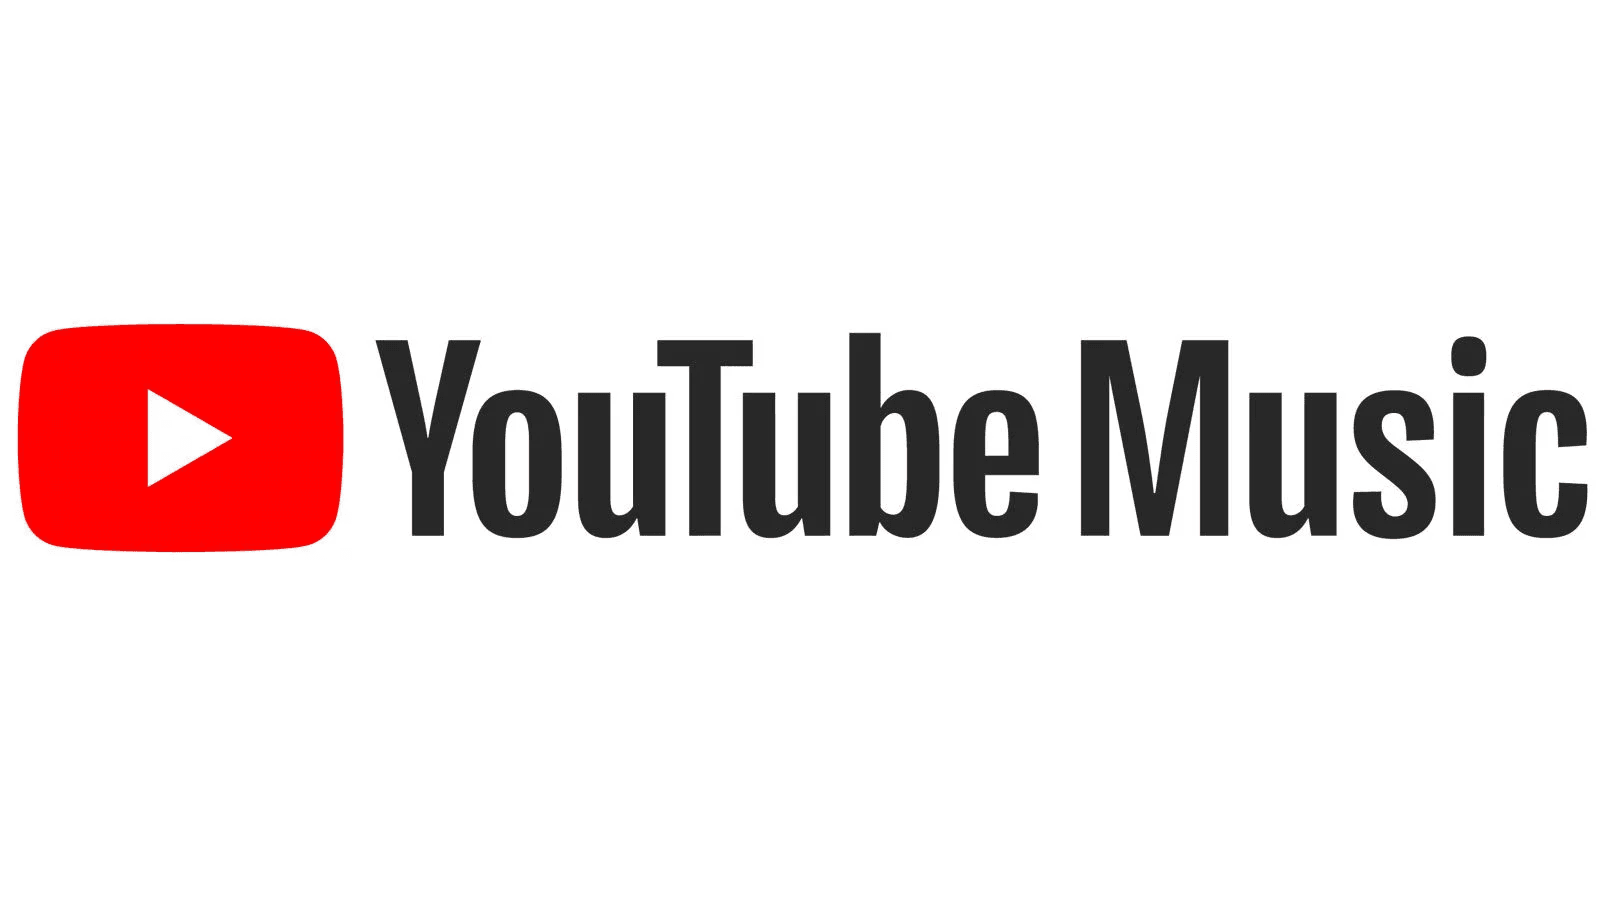 Ютуб мьюзик цена. Youtube Music лого. Ютуб Мьюзик. Значок ютуб музыка. Youtube Music картинки.